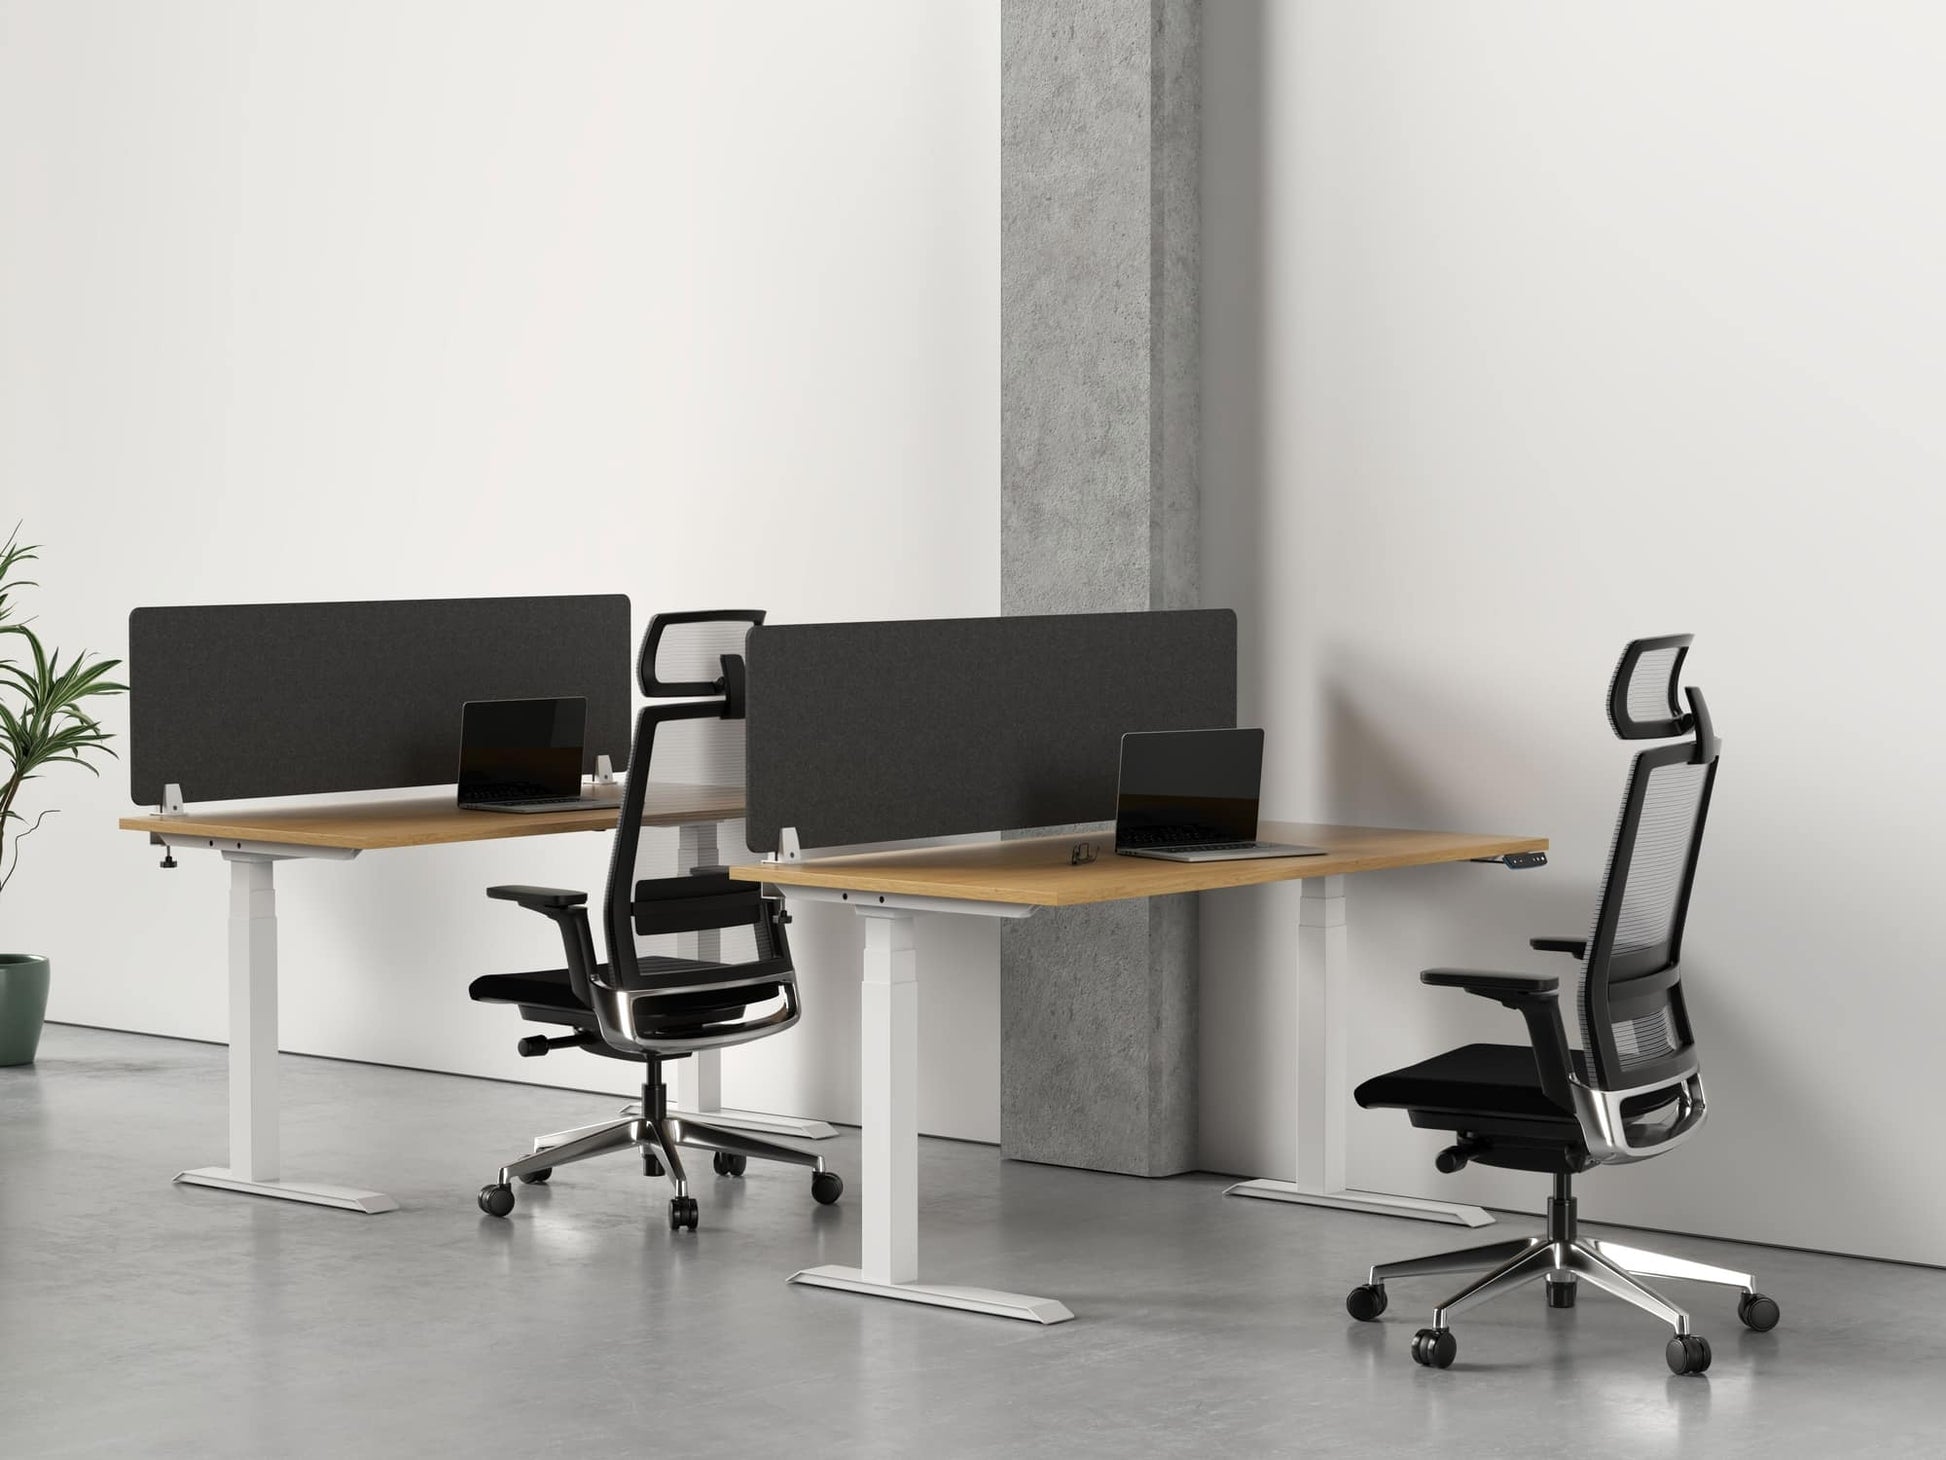 Acoustic felt desk dividers - side mounted - room view render